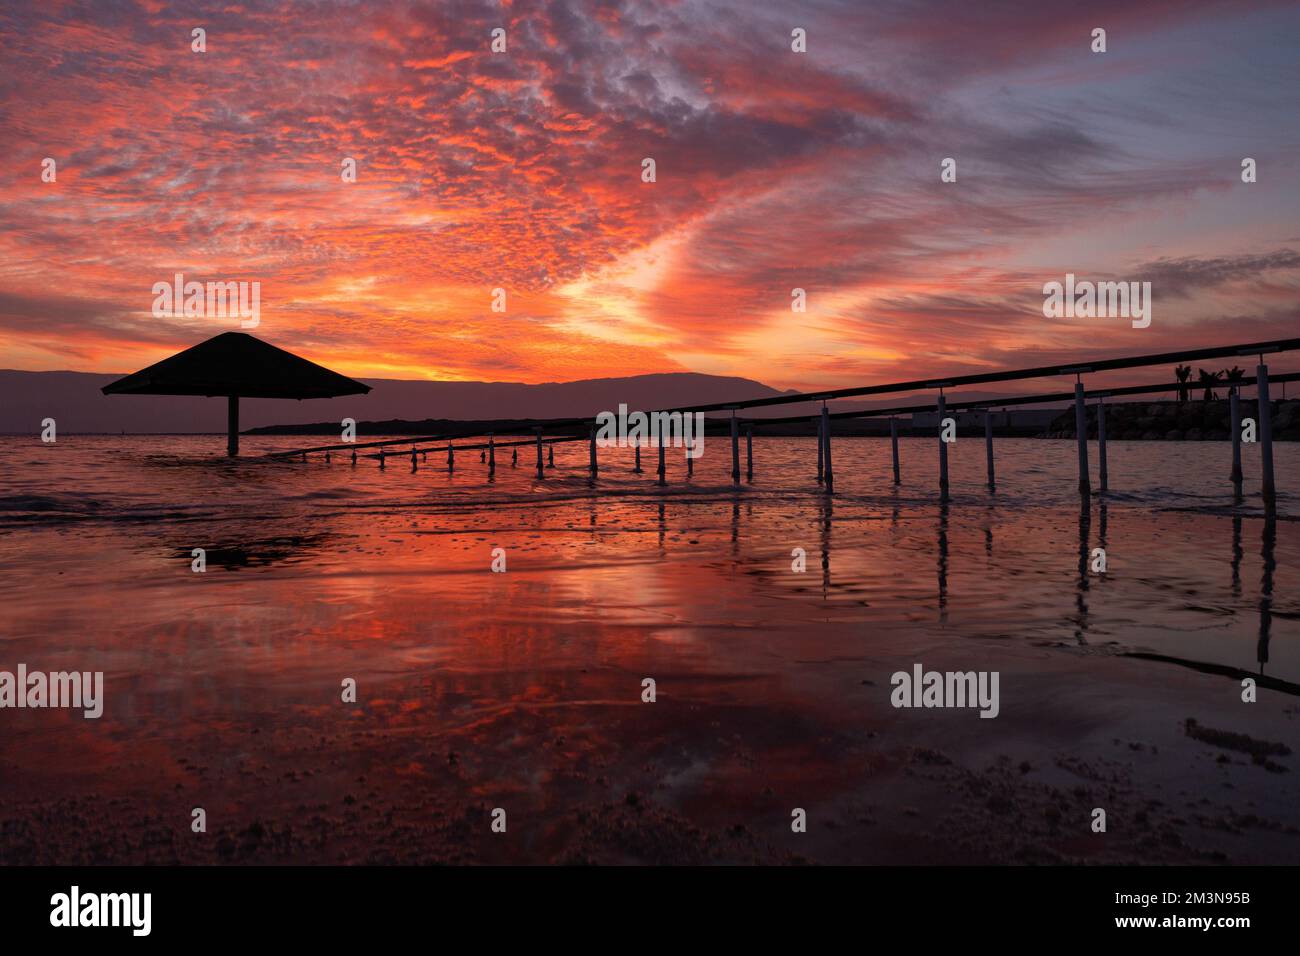 Scenic sunrise at the Dead Sea Stock Photo